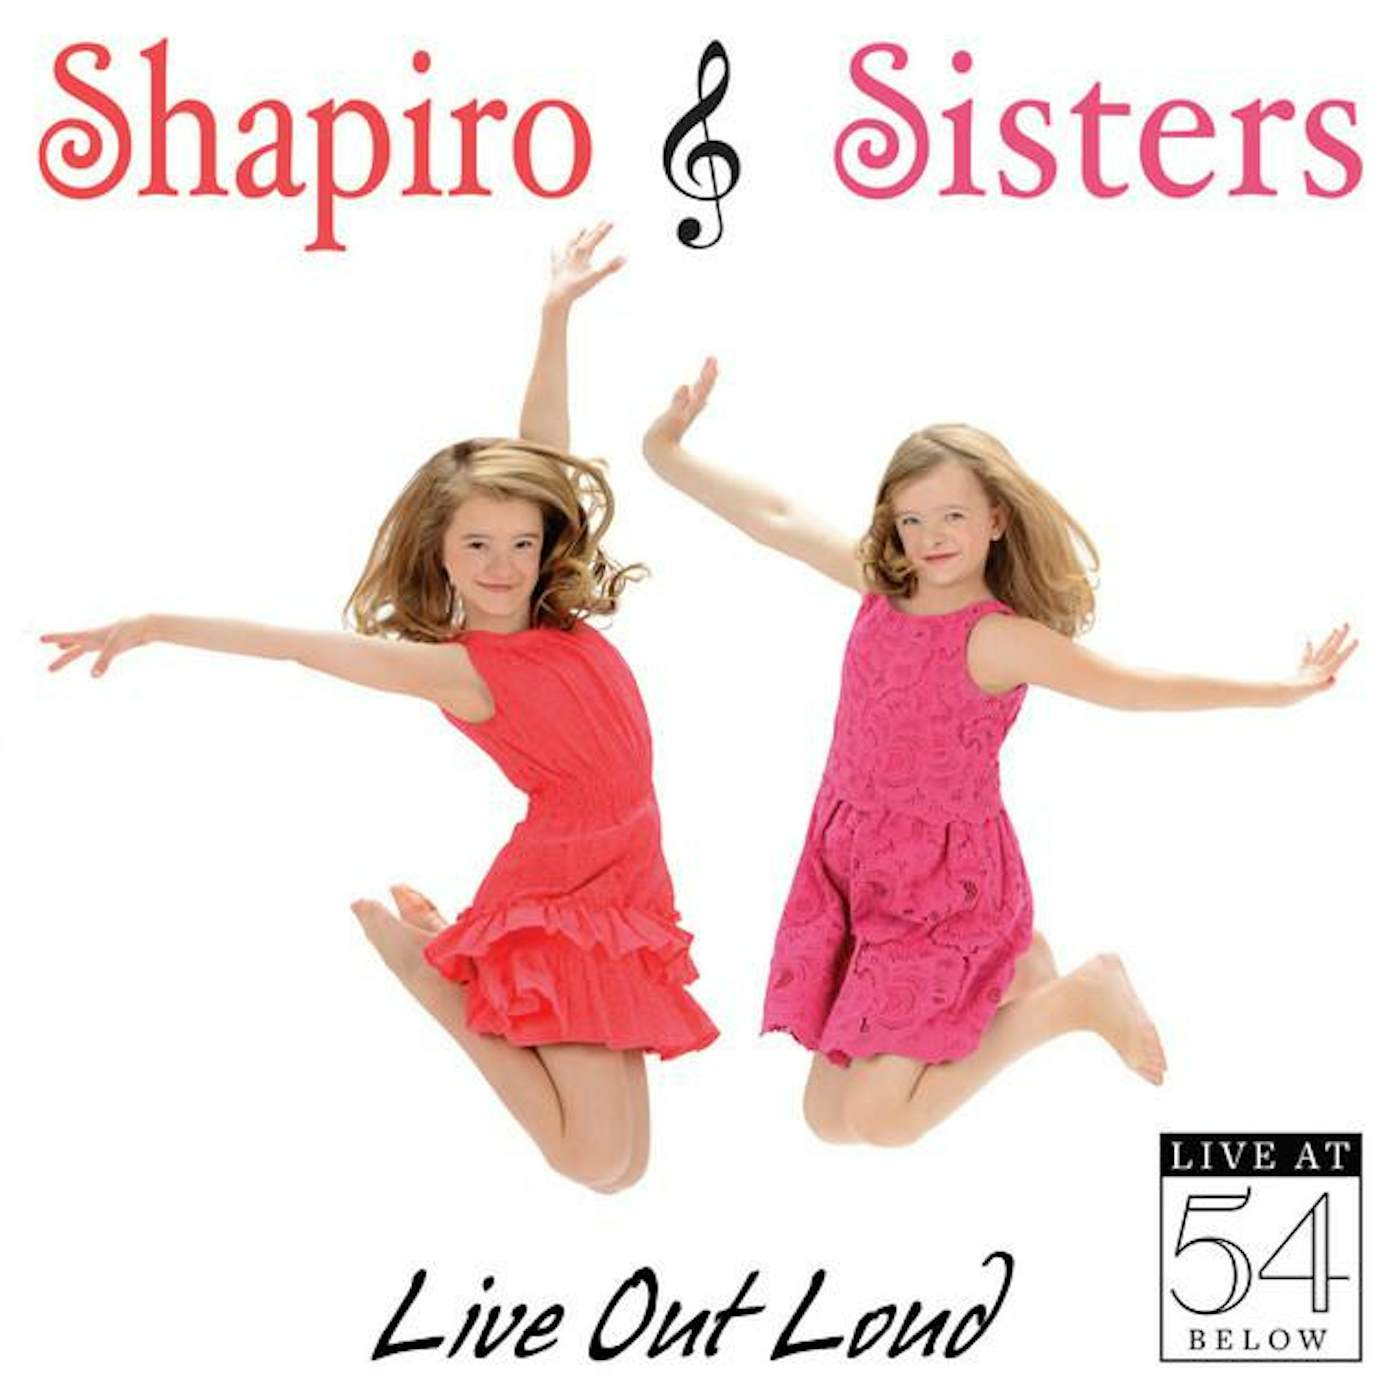 Shapiro Sisters